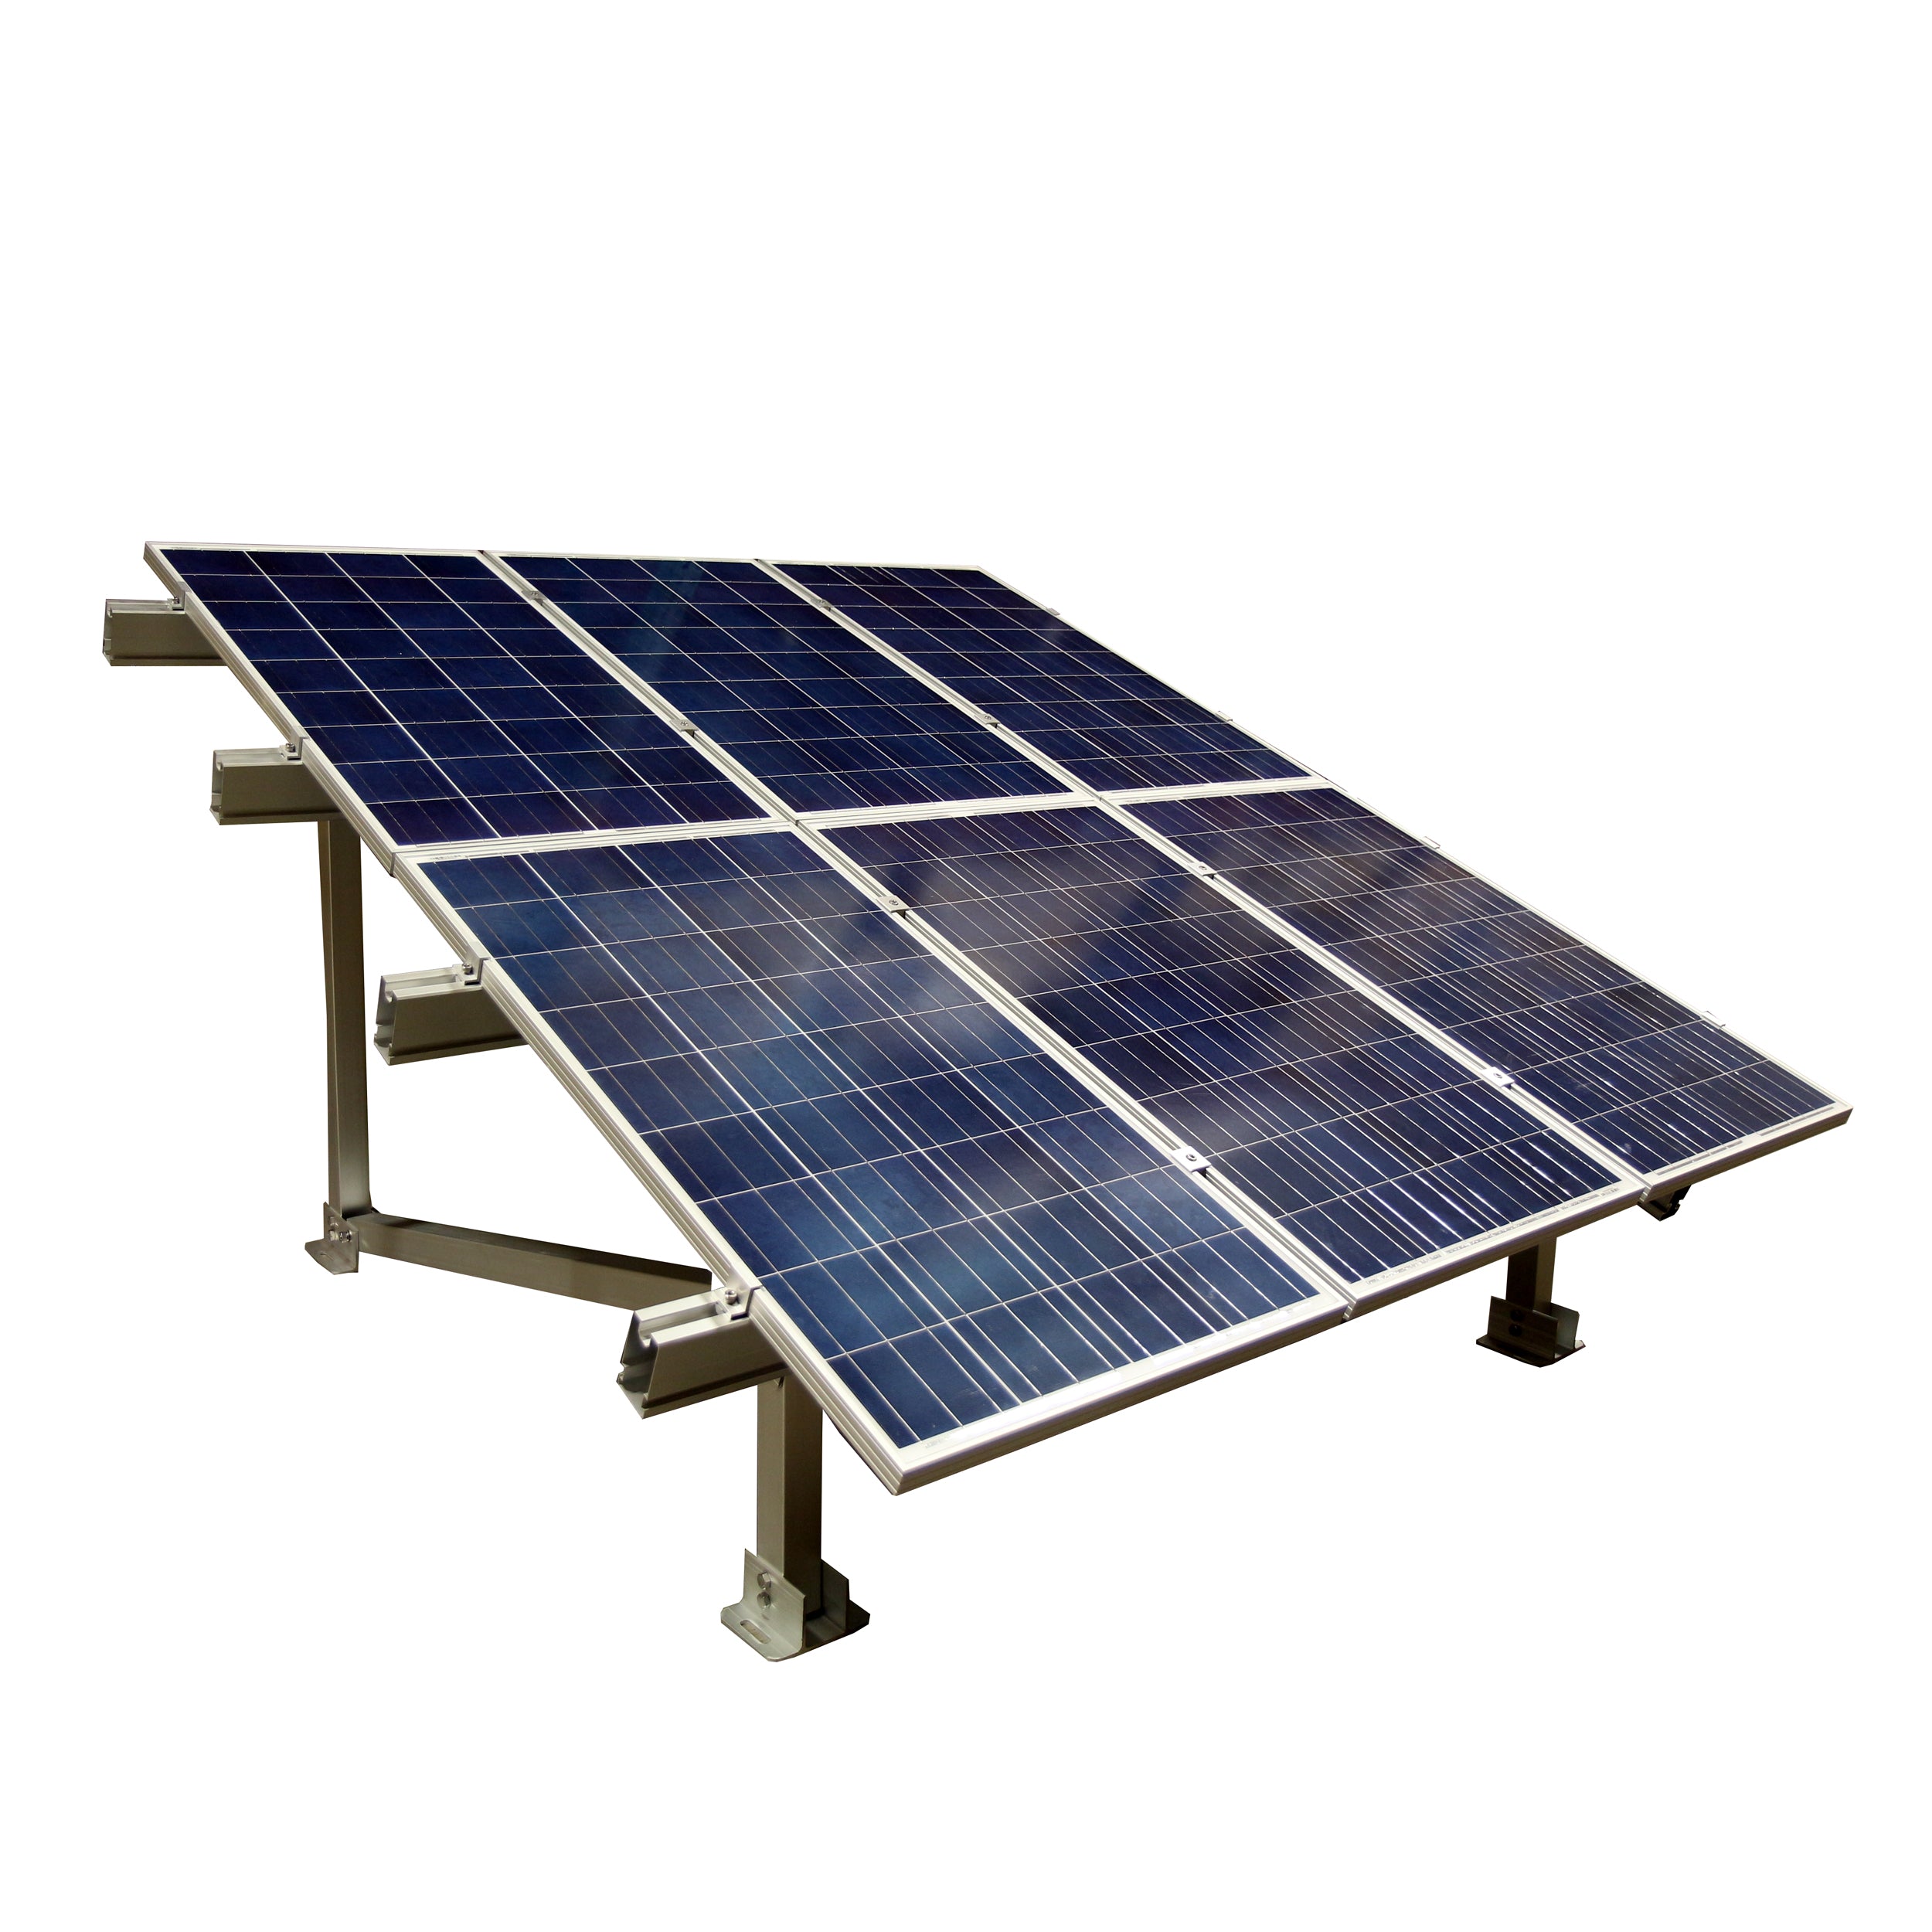 Aims Power - 250-330 Watt Solar Ground Mount Racks for 6 Panels - PV-6X250RACK